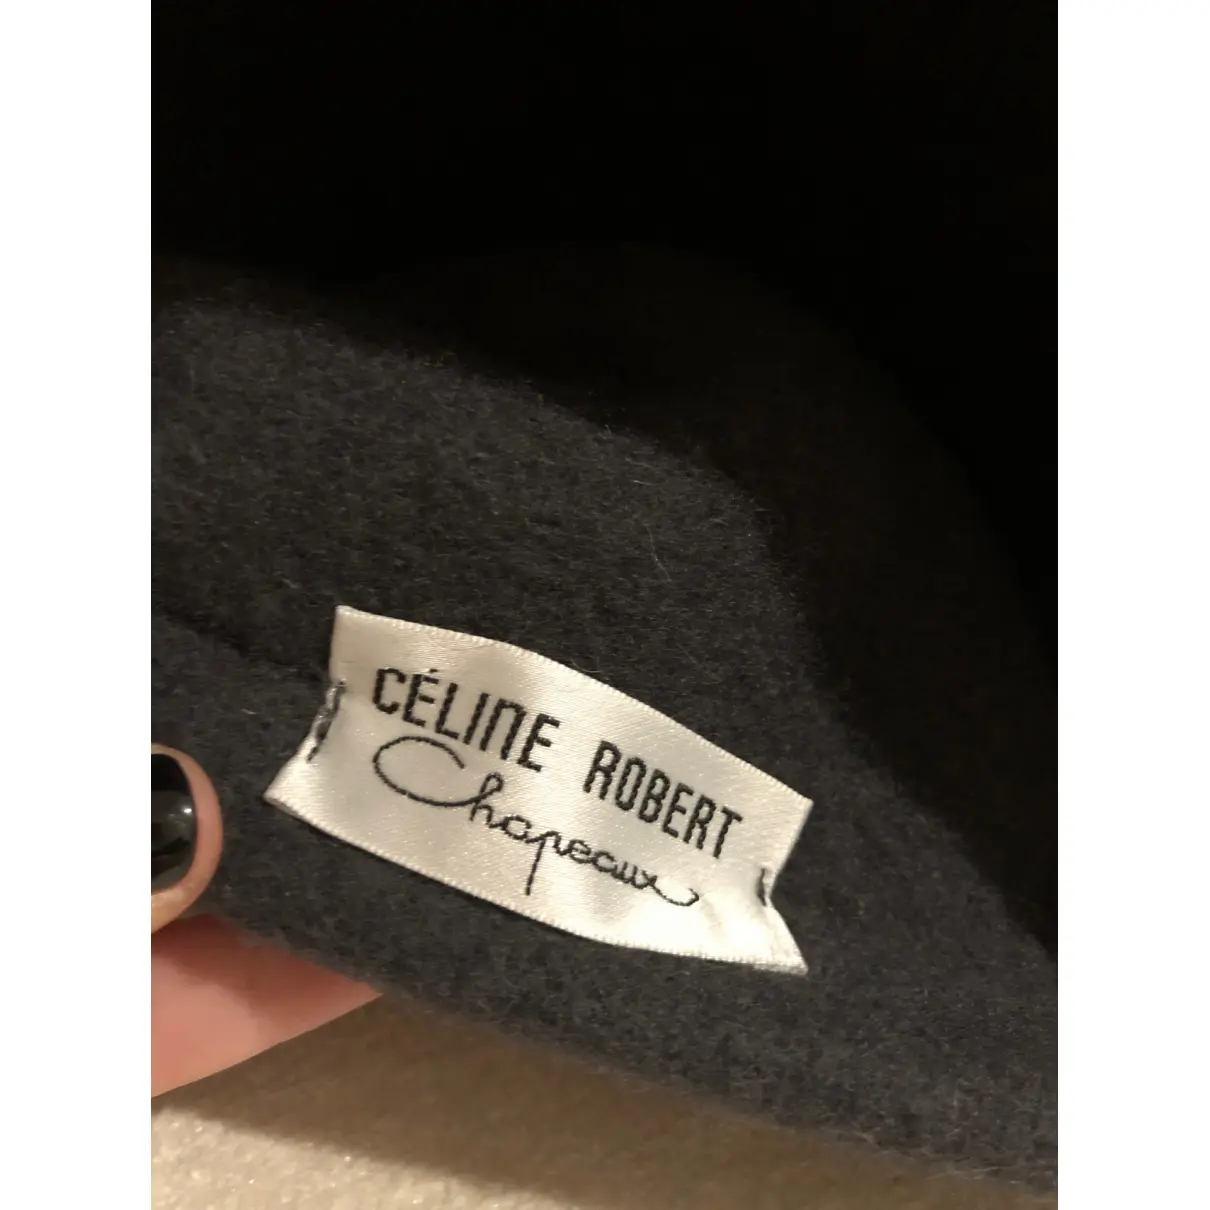 Buy Celine Robert Wool beret online